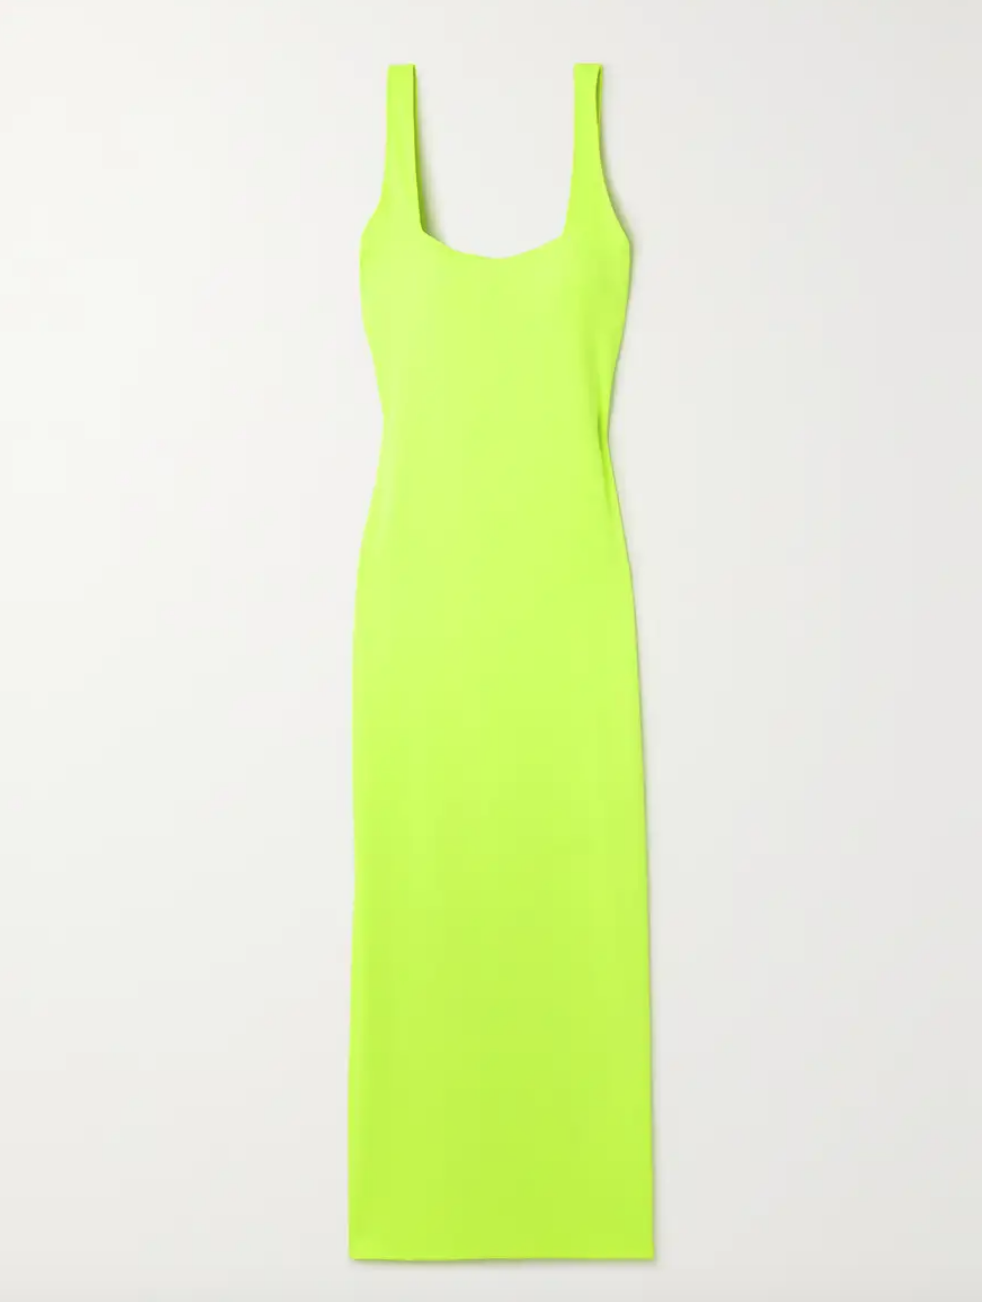 Brynn Whitfield's Neon Square Neck Maxi Dress